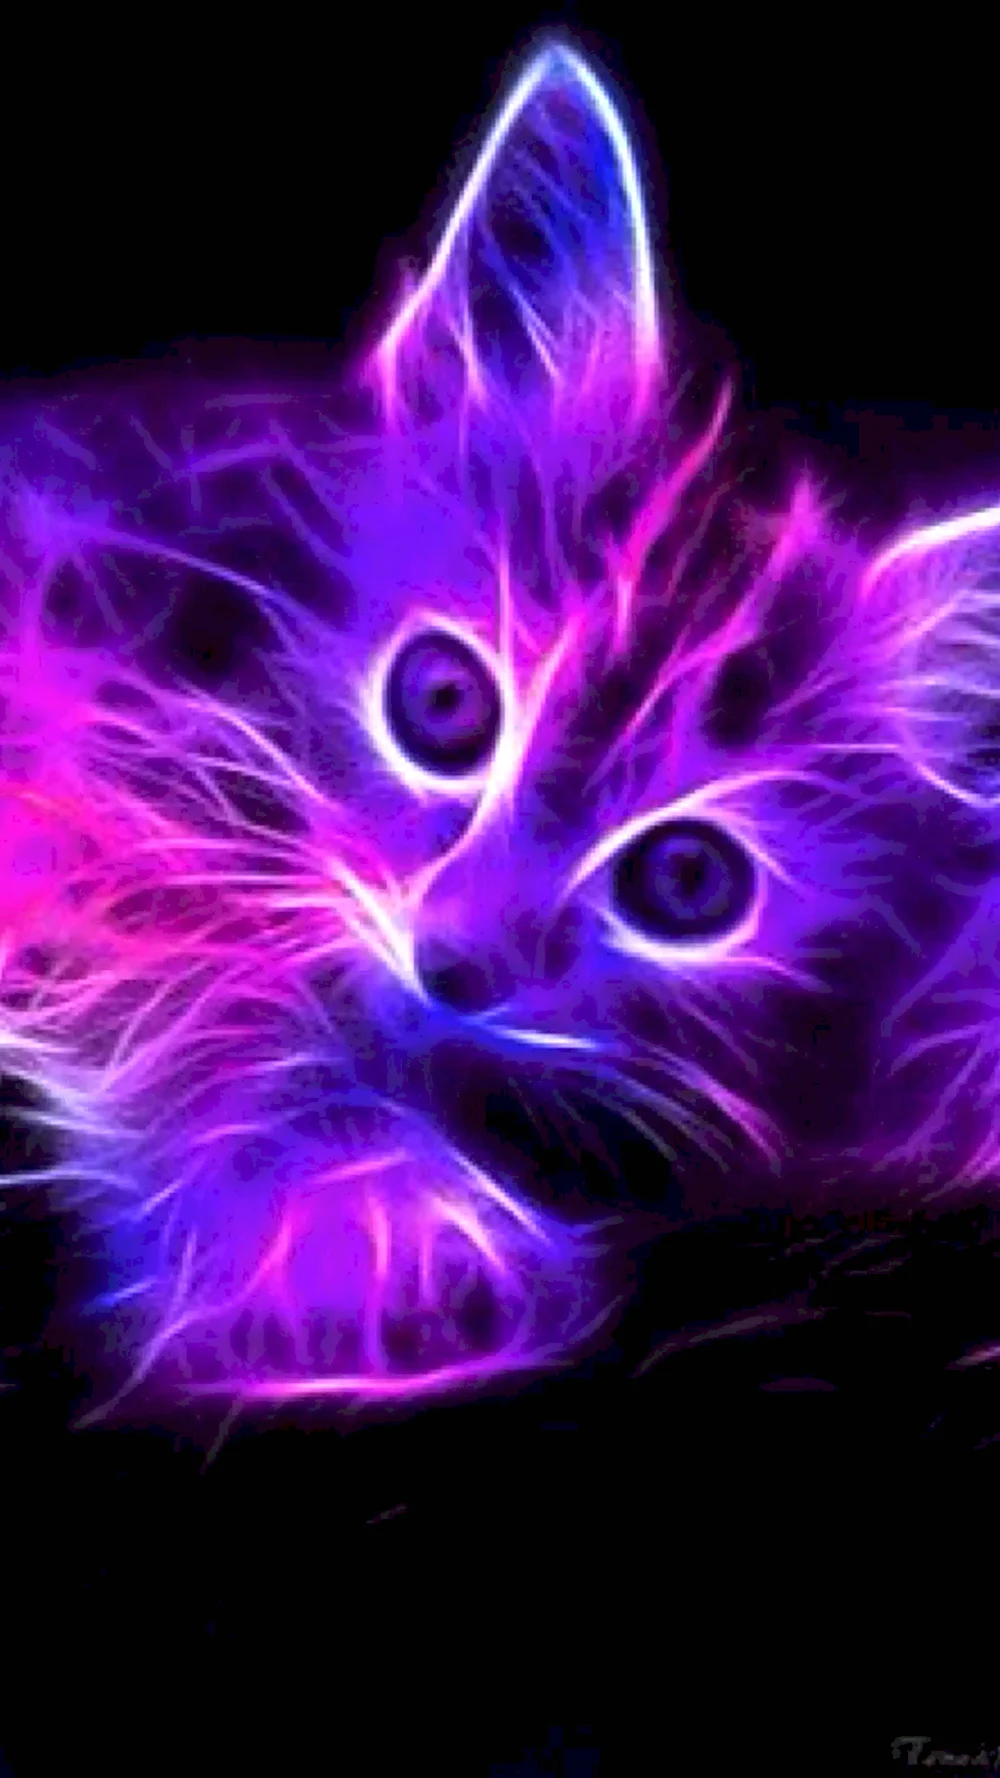 Фиолетовая кошка